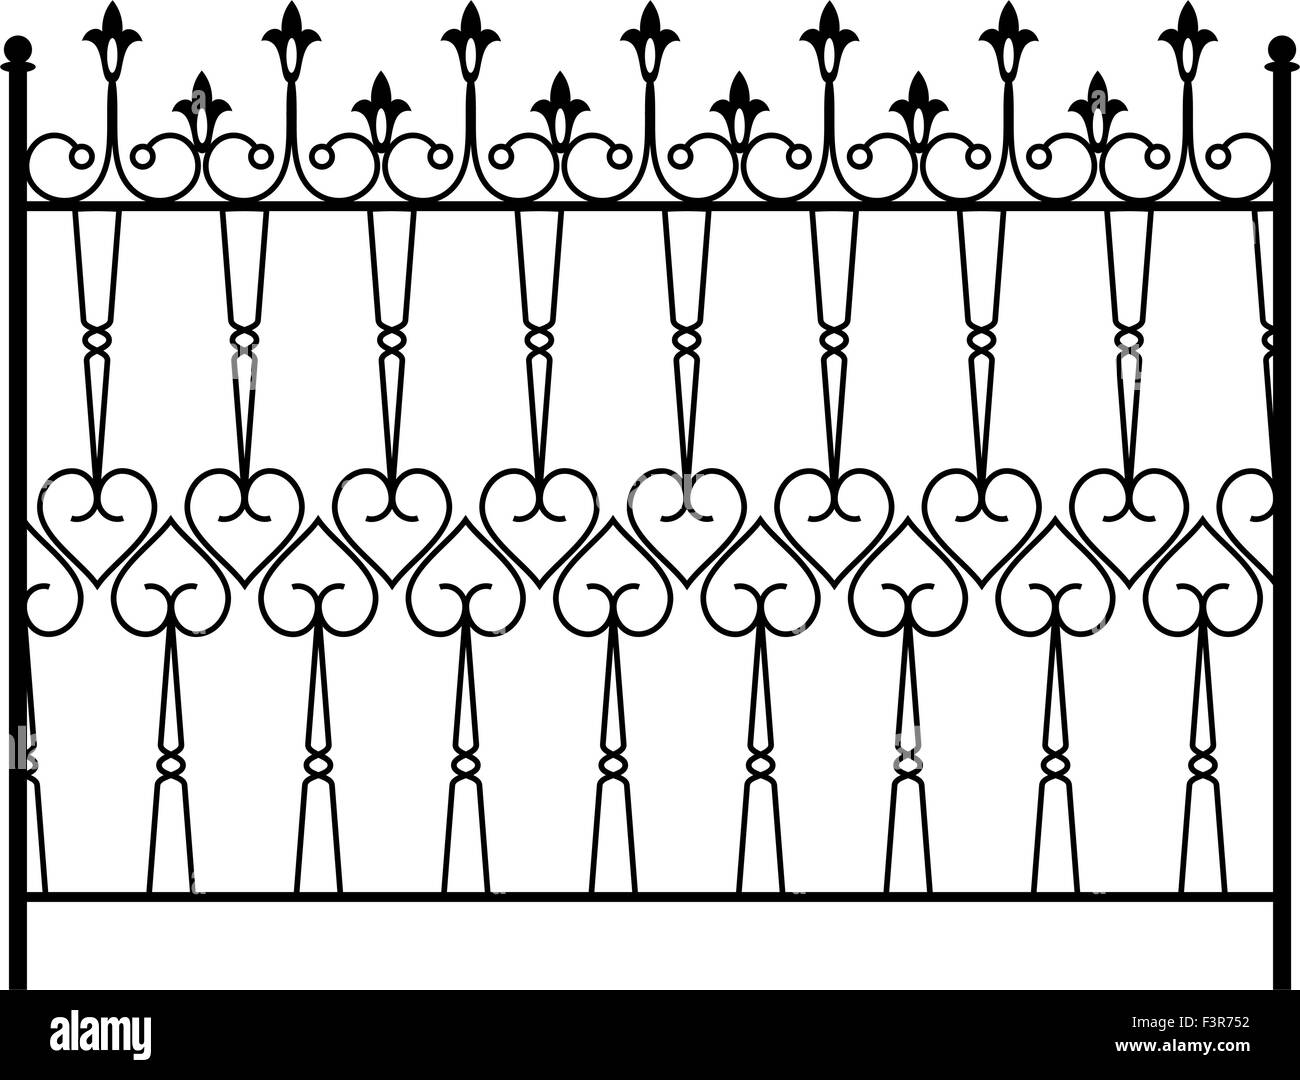 Wrought Iron Gate, Door, Fence, Window, Grill, Railing Design Vector Art Stock Vector